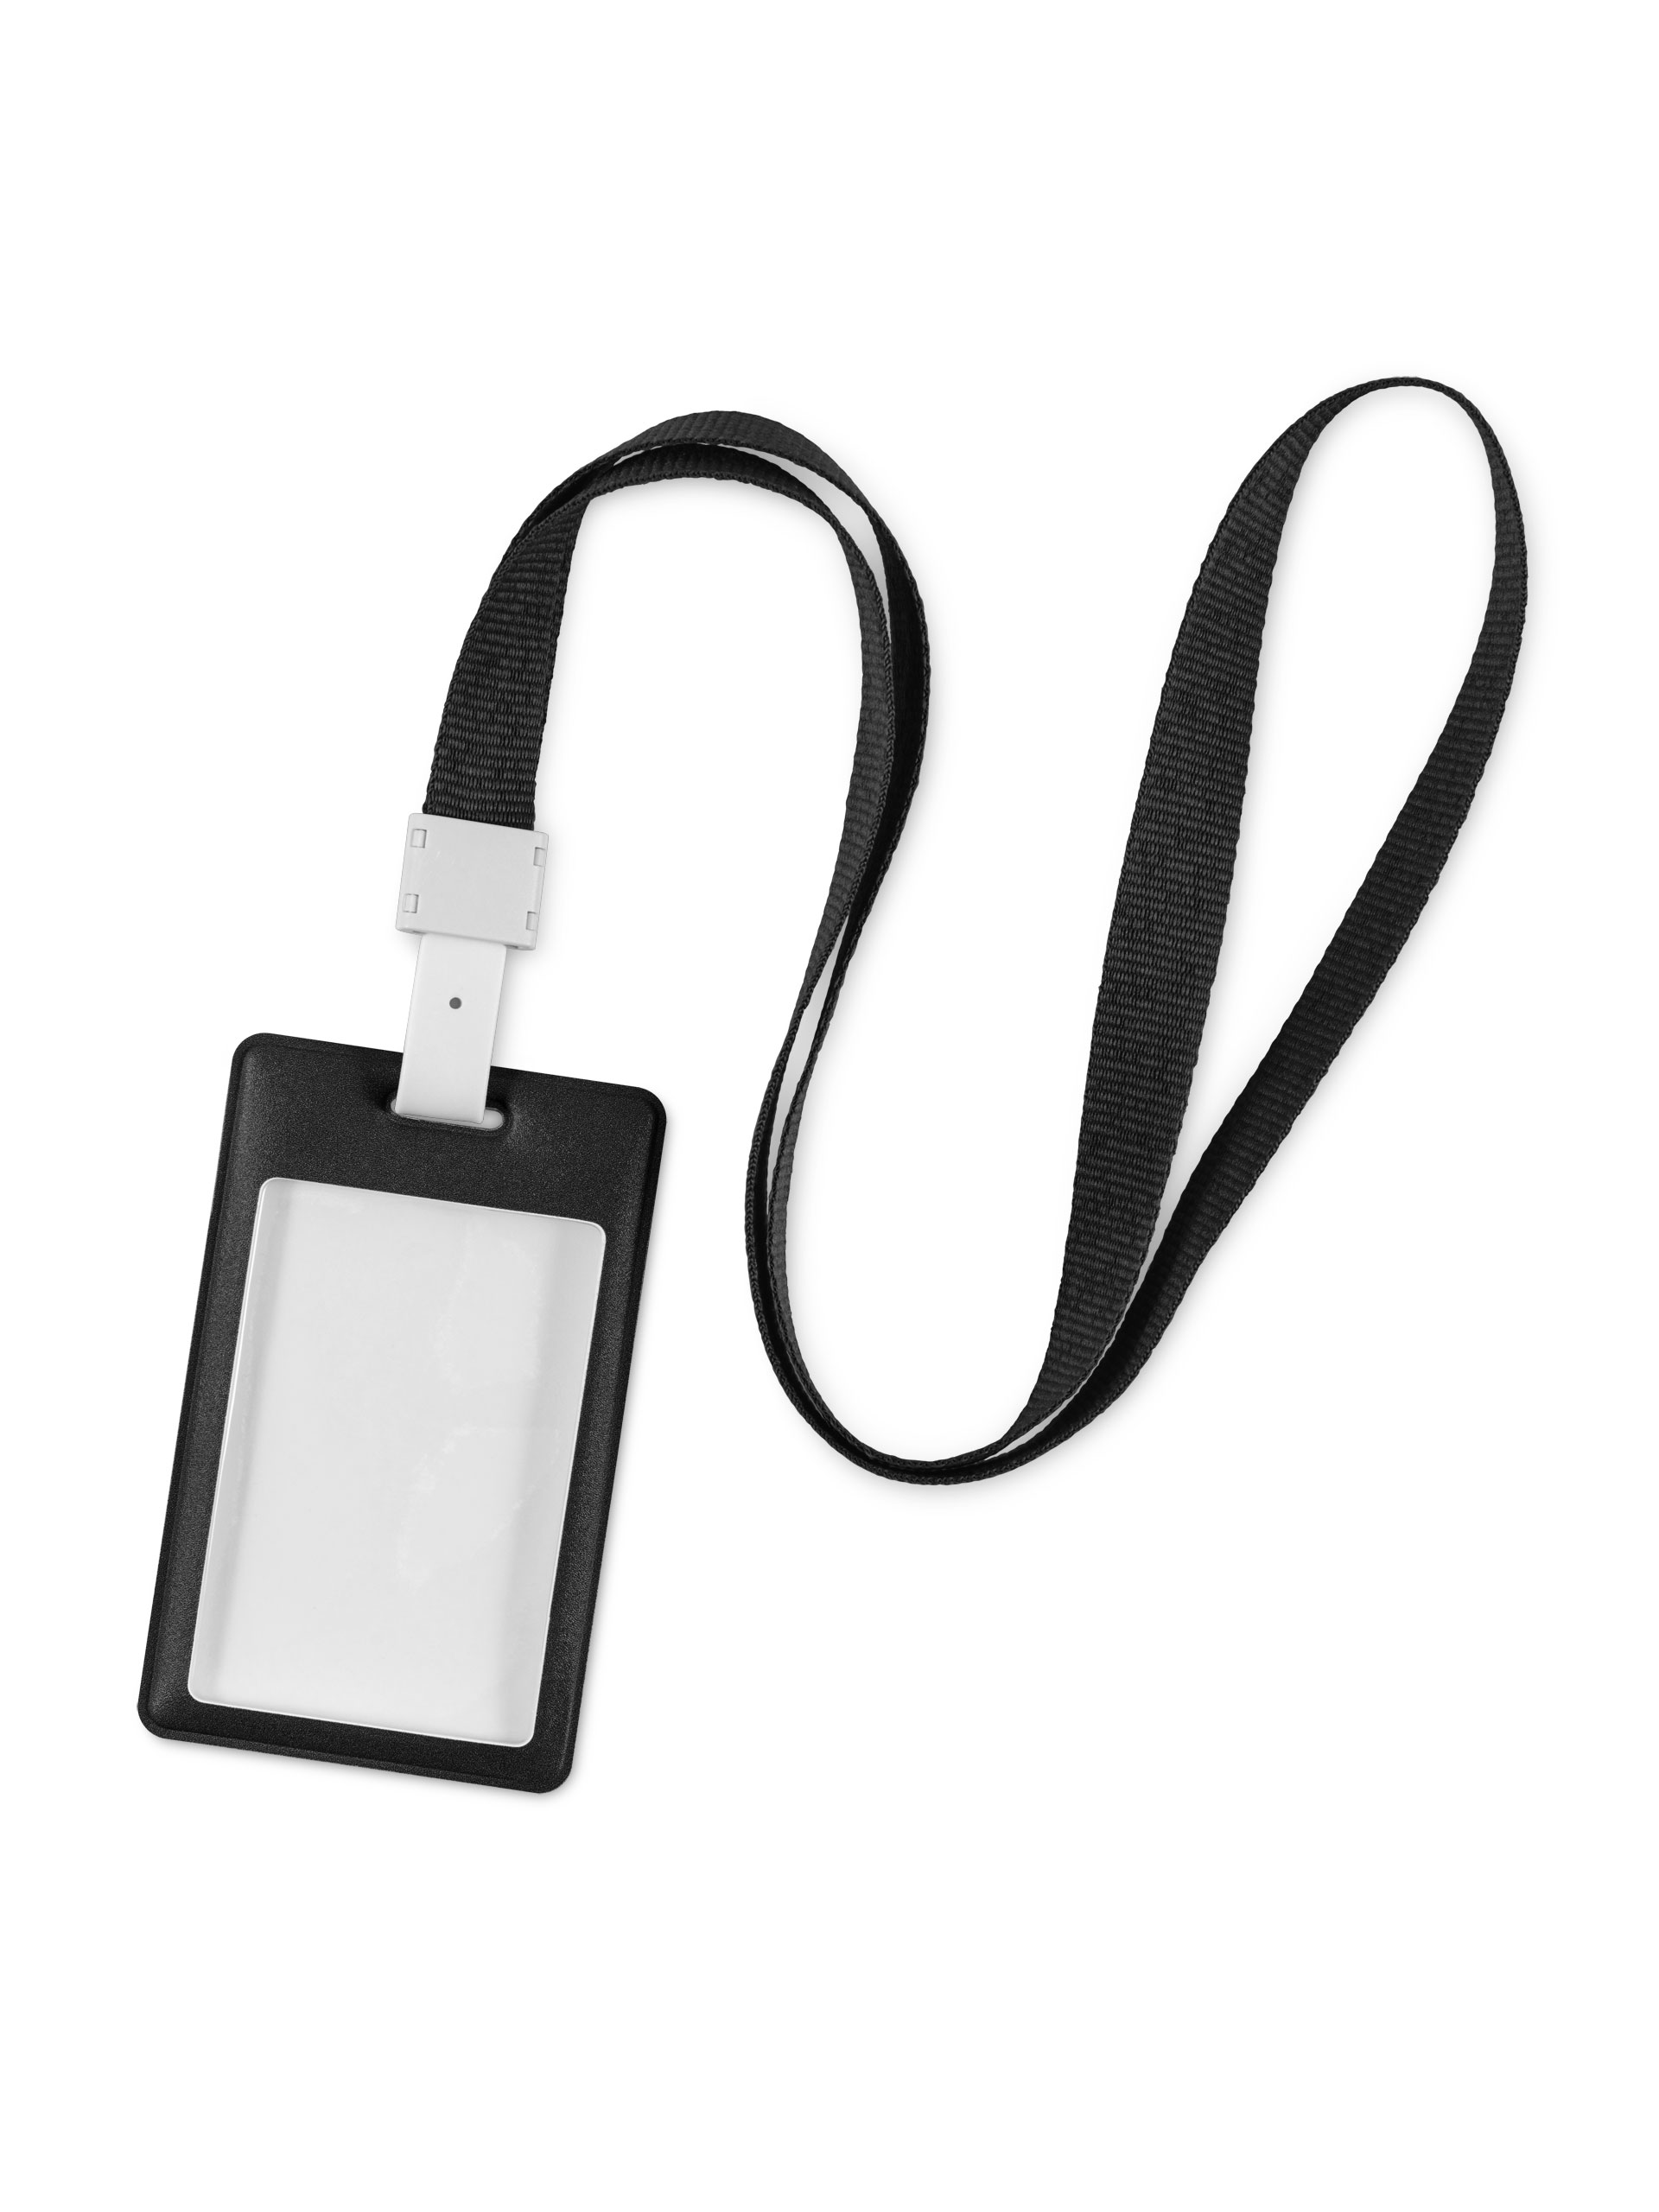 Лента для бейджа / держатель для бейджа с карманом для карты / пропуска Flexpocket черная